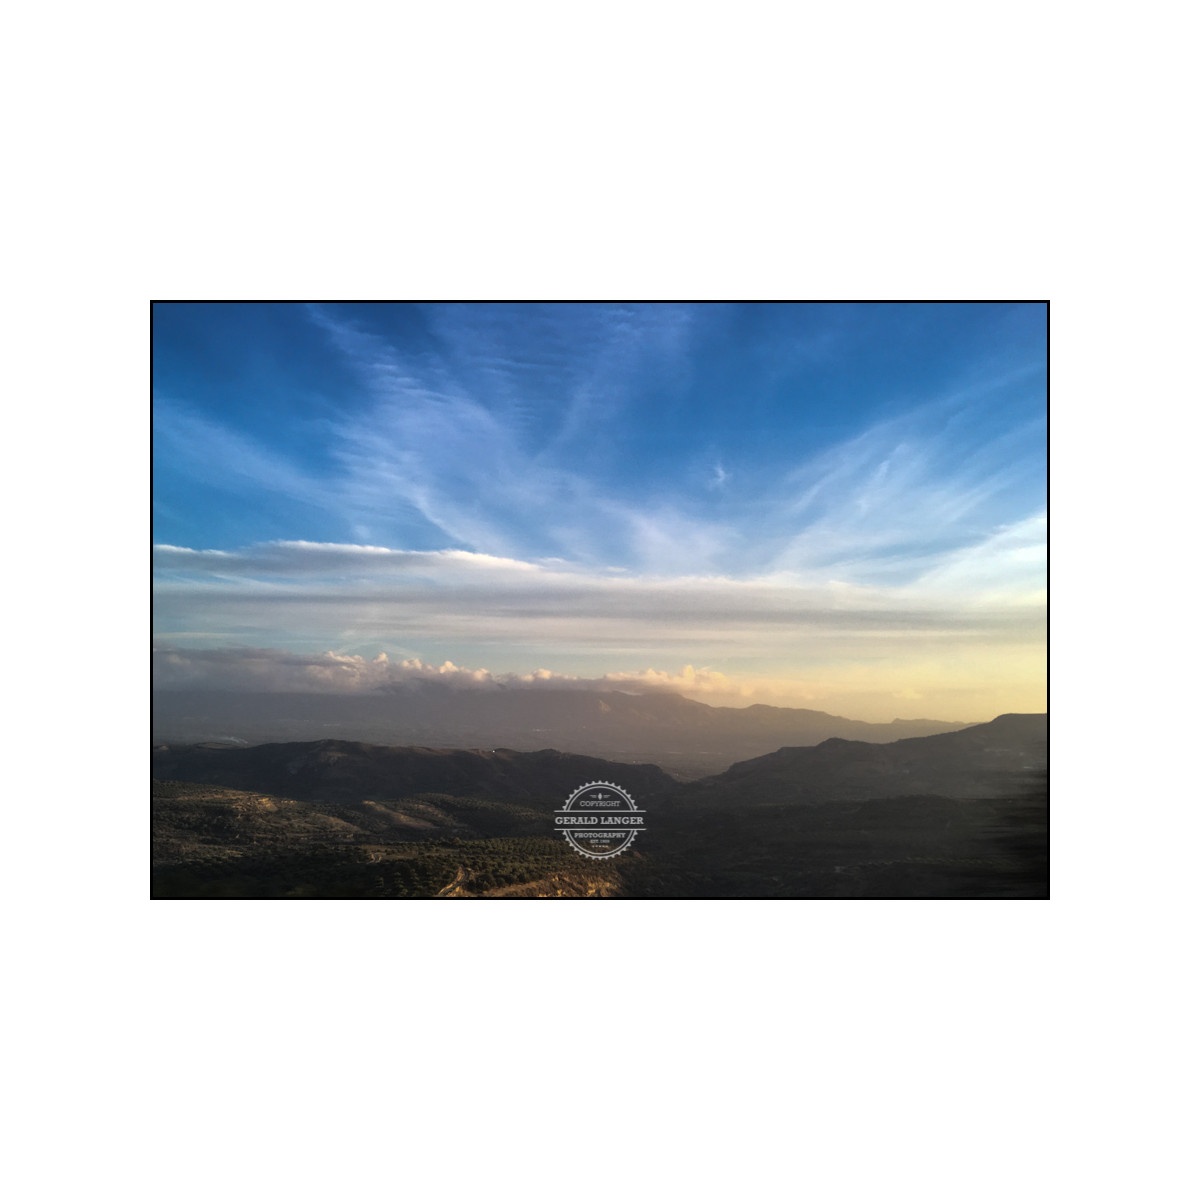 20181119 Kreta by iPhone SE © Gerald Langer 180 - Gerald Langer